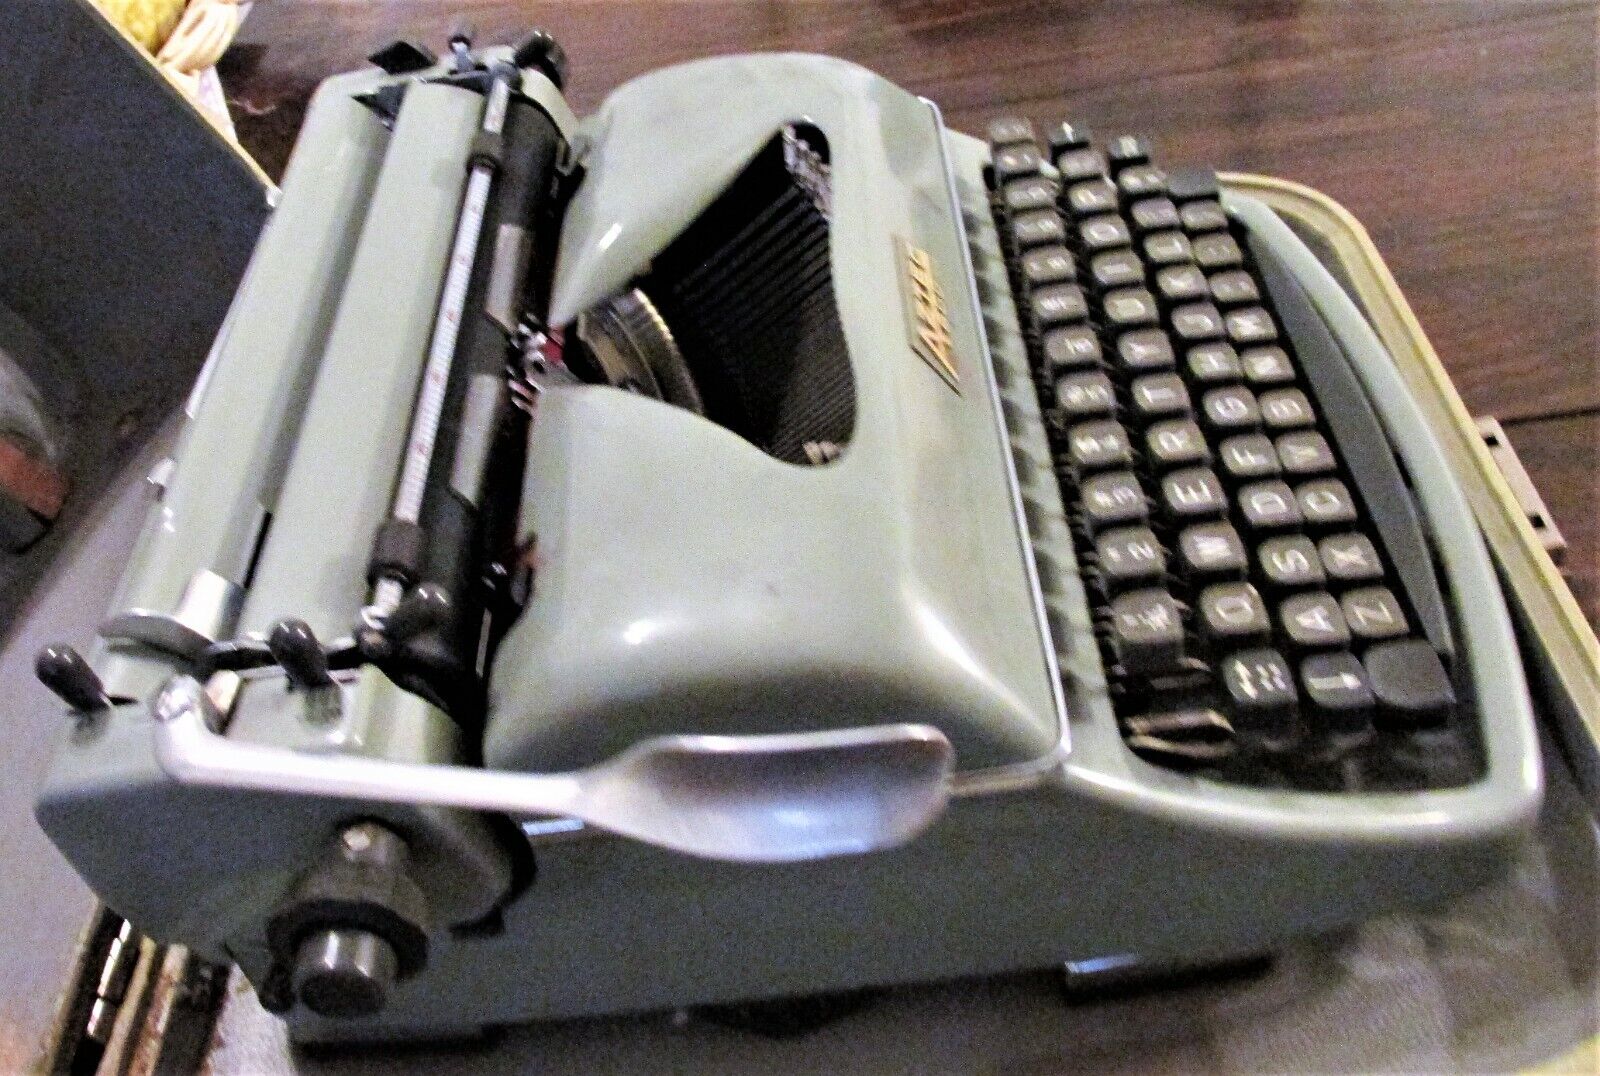 Vintage 1961 German-Made Rheinmetall Aztec 600 Manual Typewriter with Case